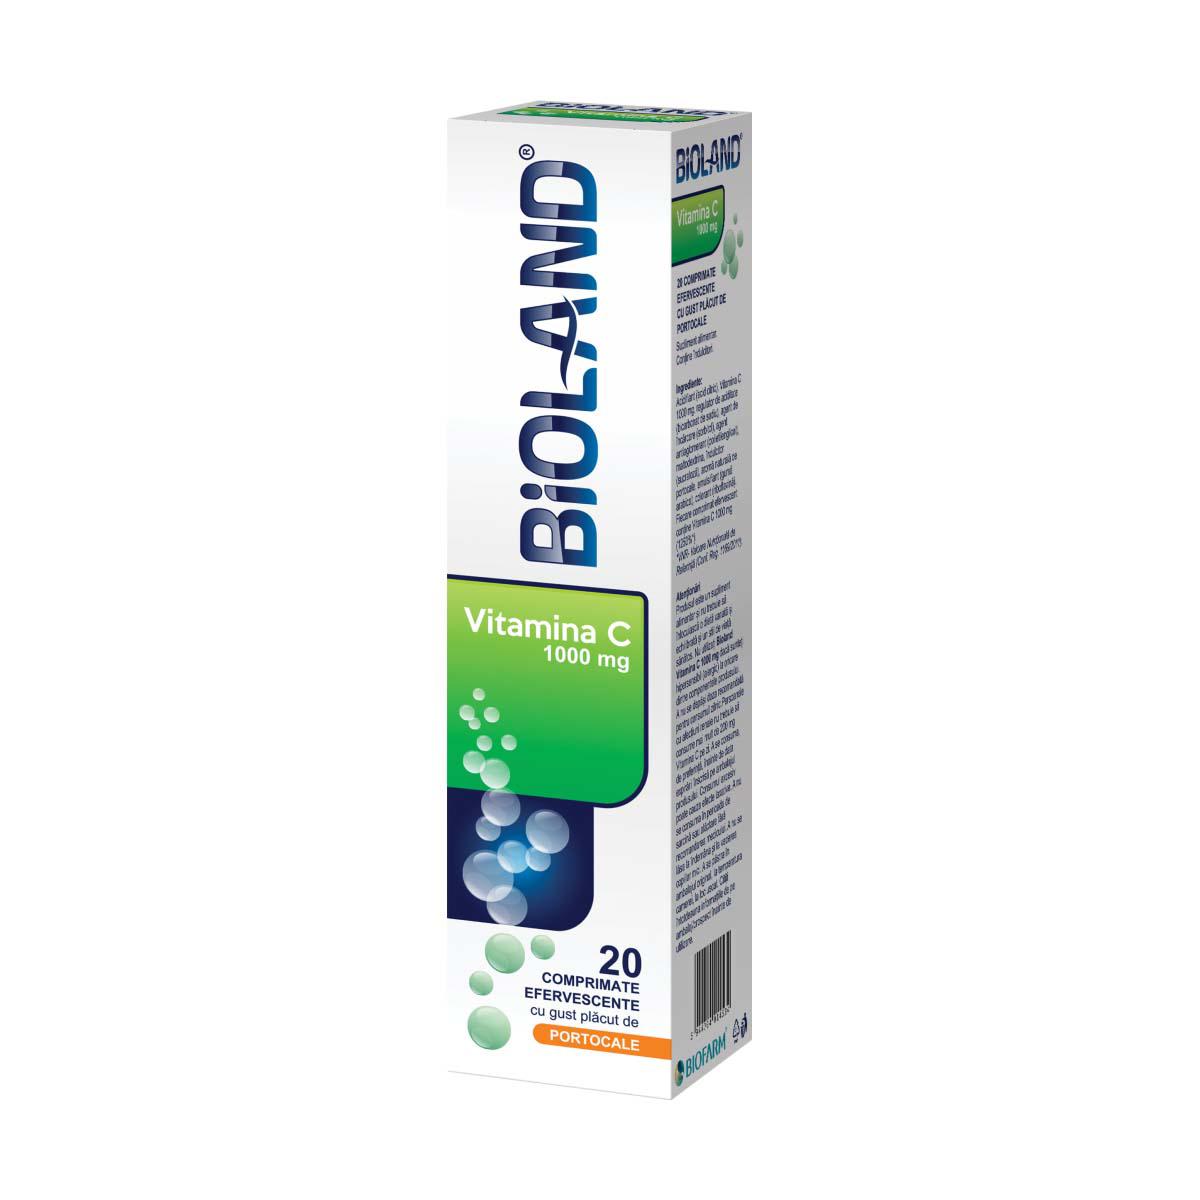 Bioland Vitamina C 1000 miligrame 20 comprimate efervescente Biofarm